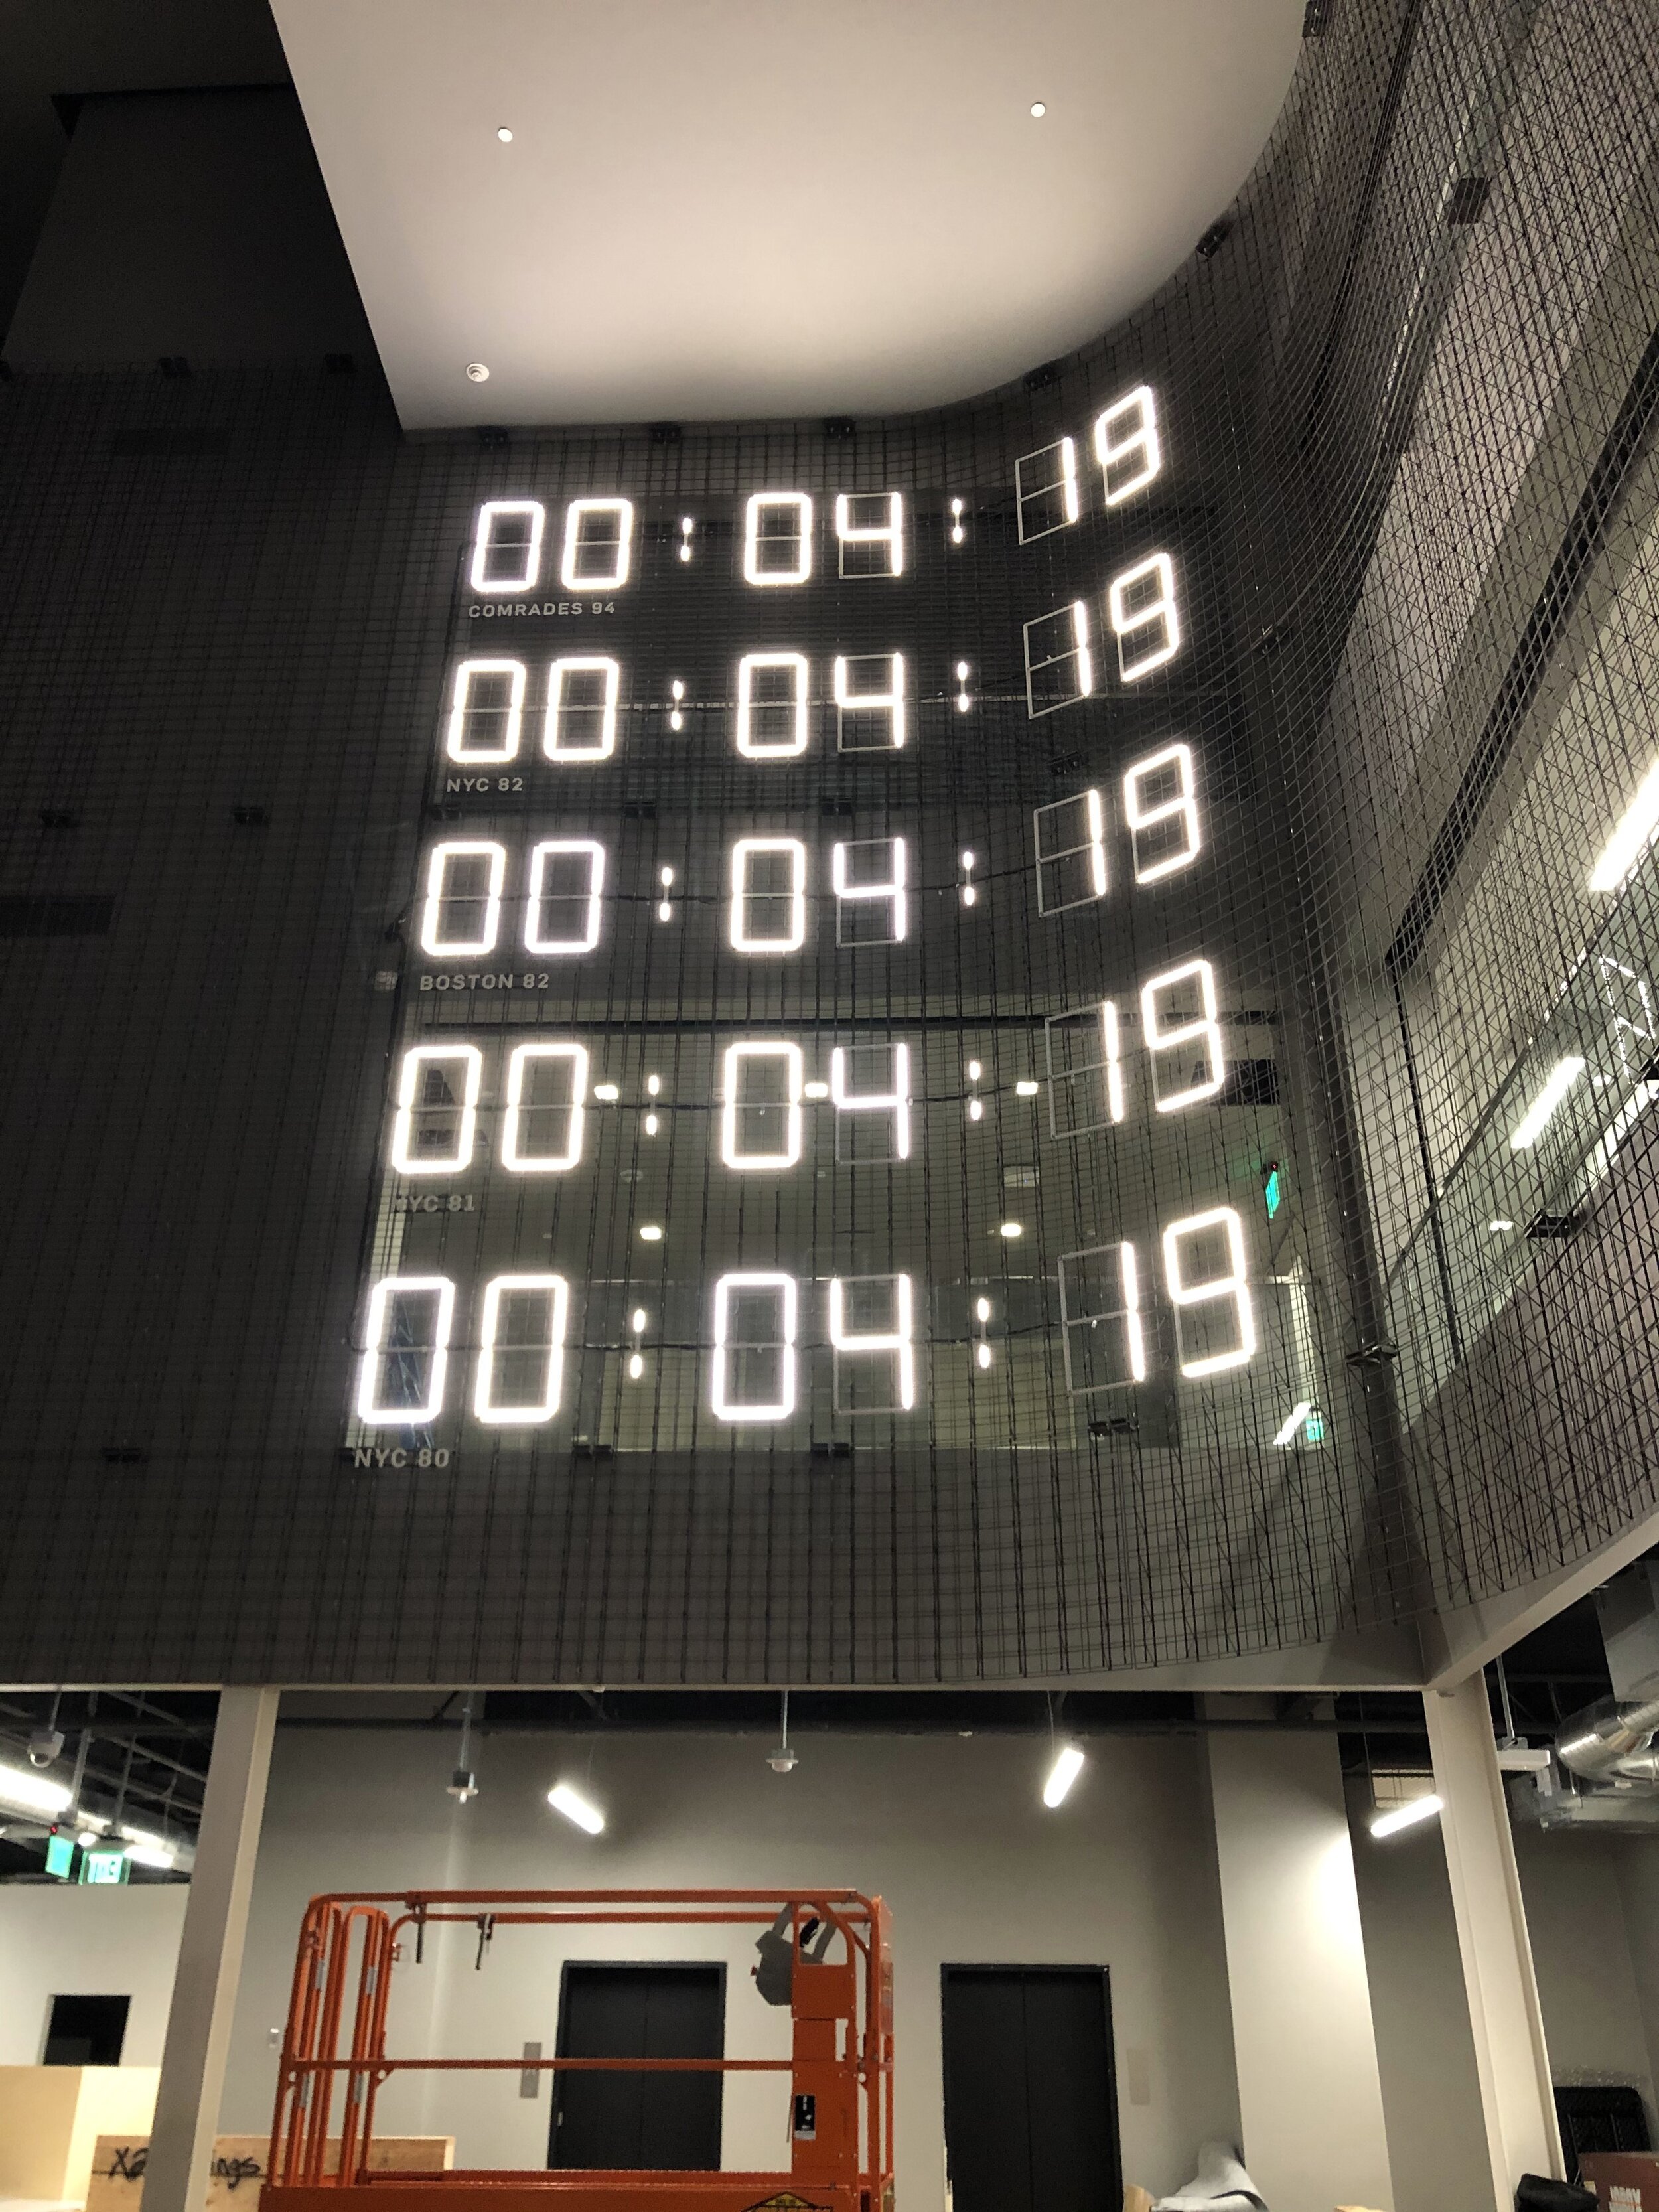 Nike Marathon Clocks